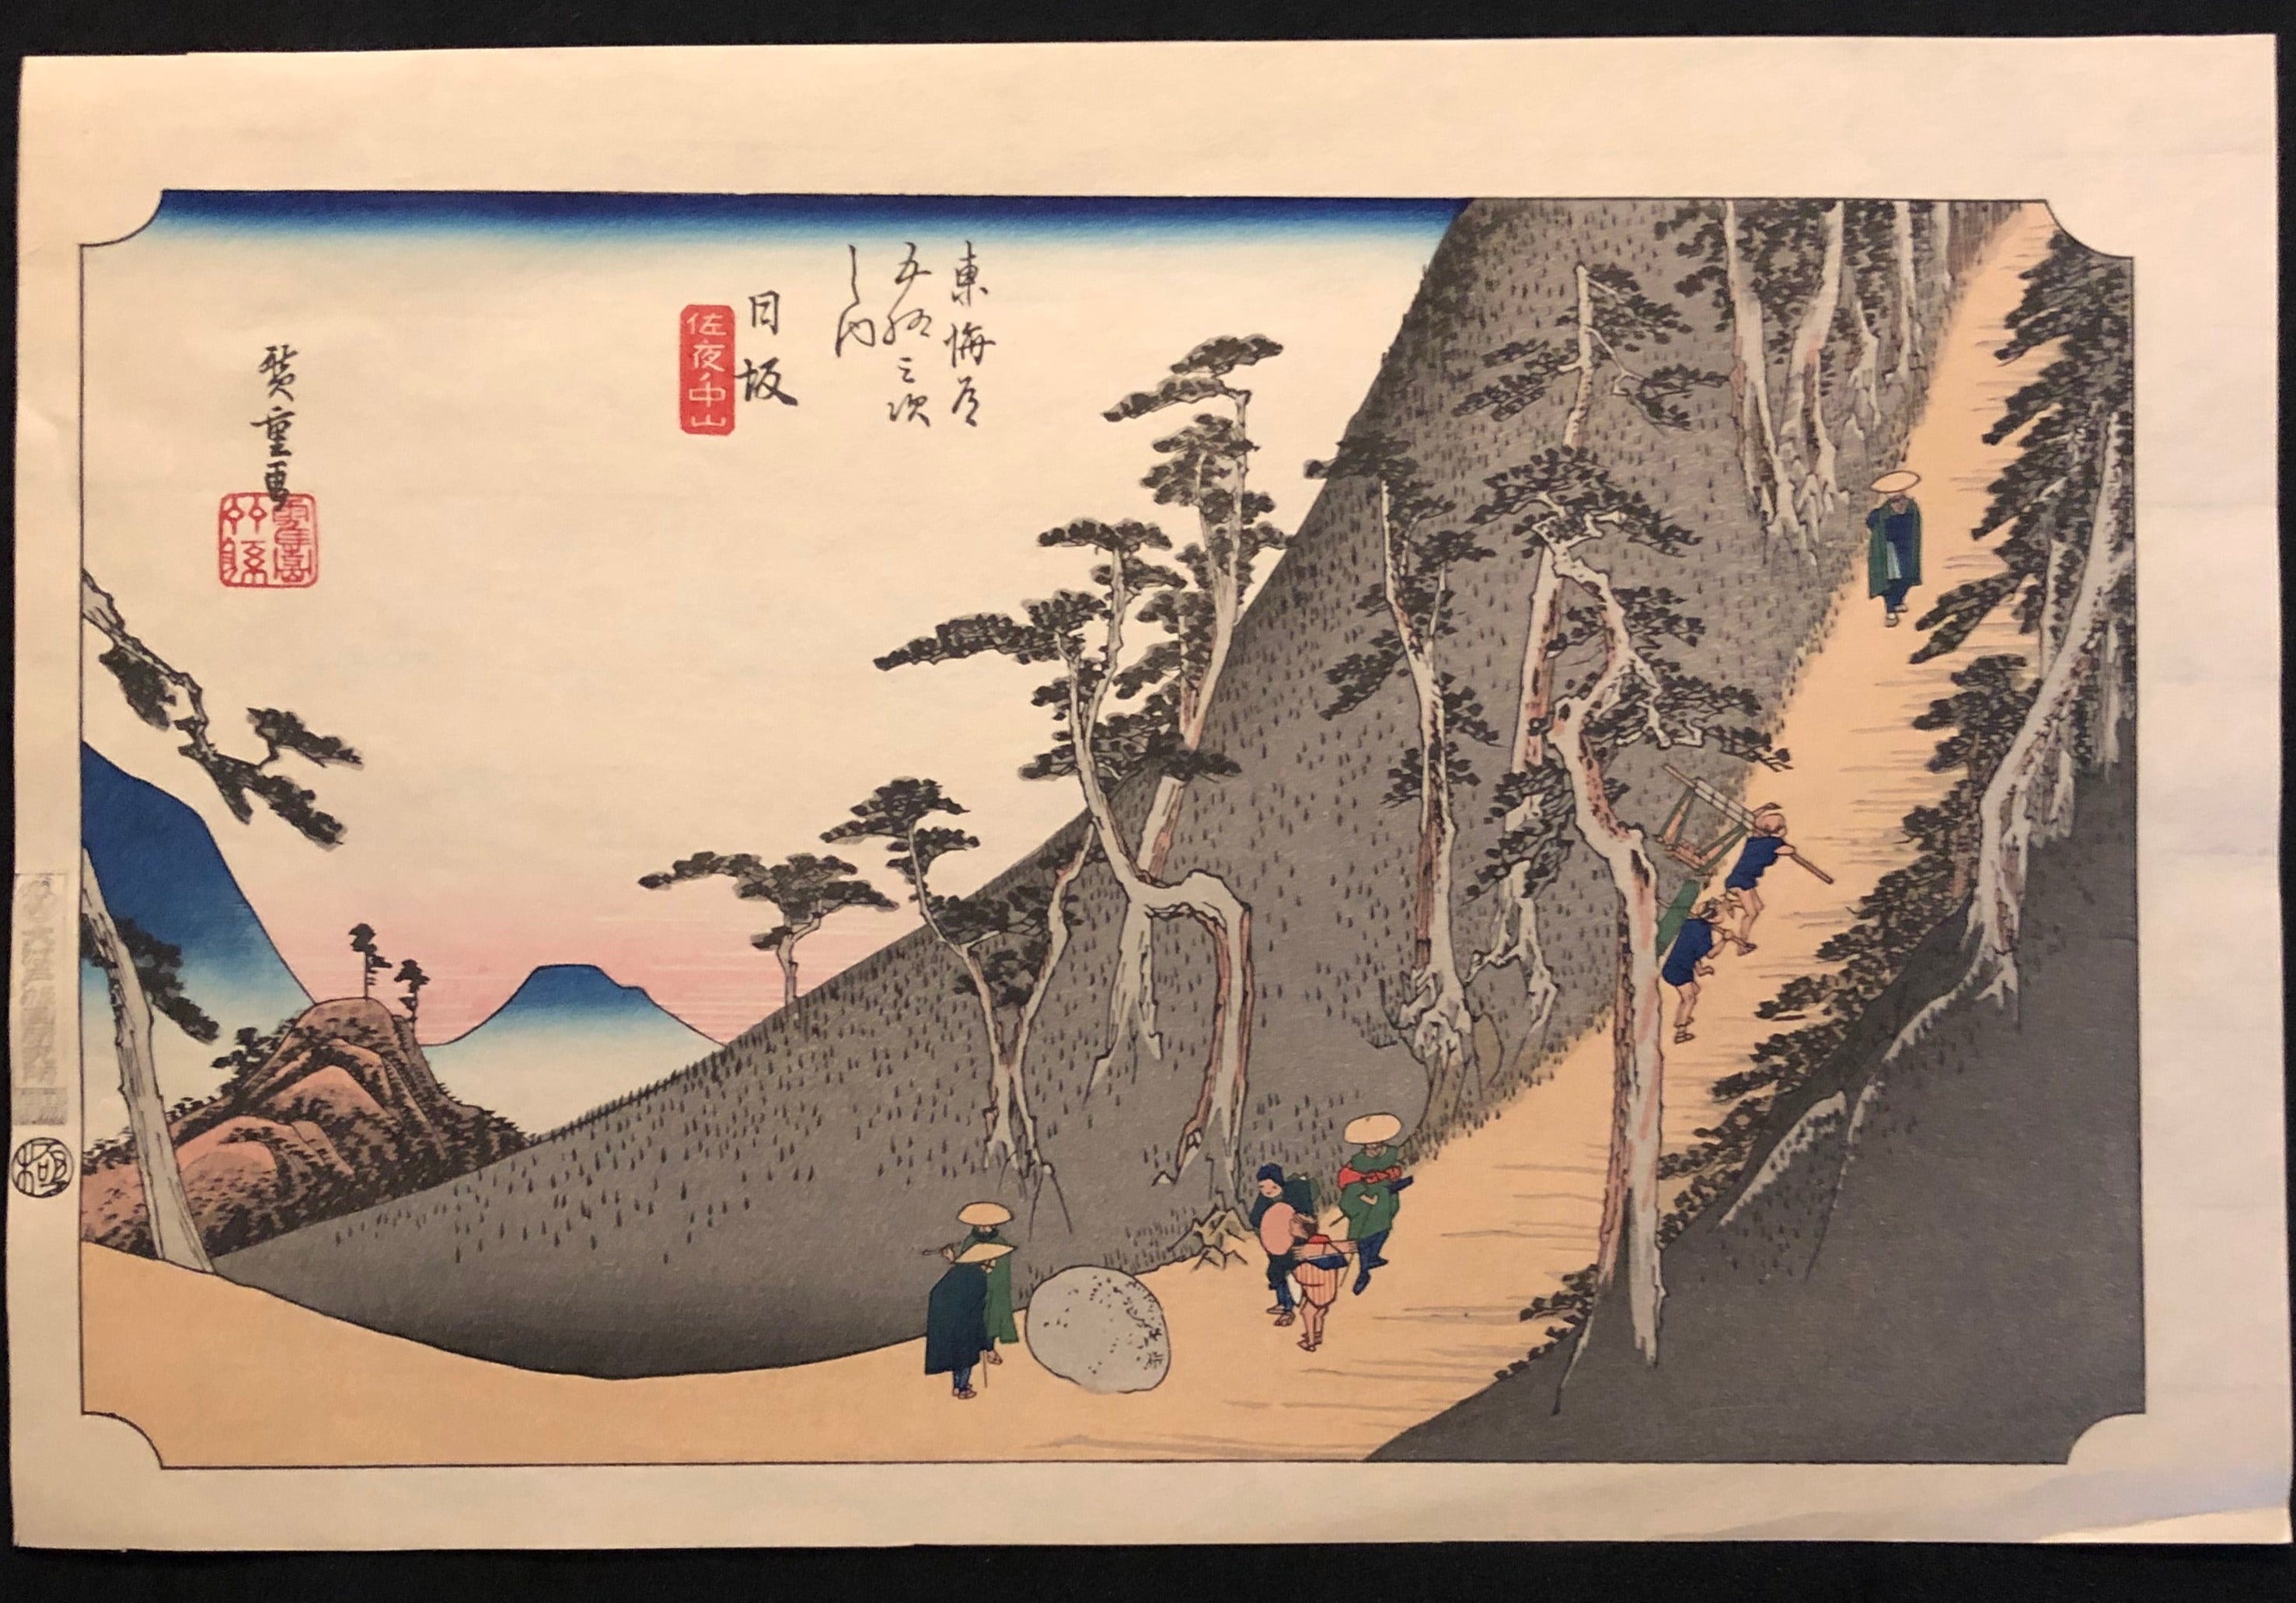 歌川広重 東海道五十三次 復刻版 日坂 木版画 浮世絵 Utagawa 